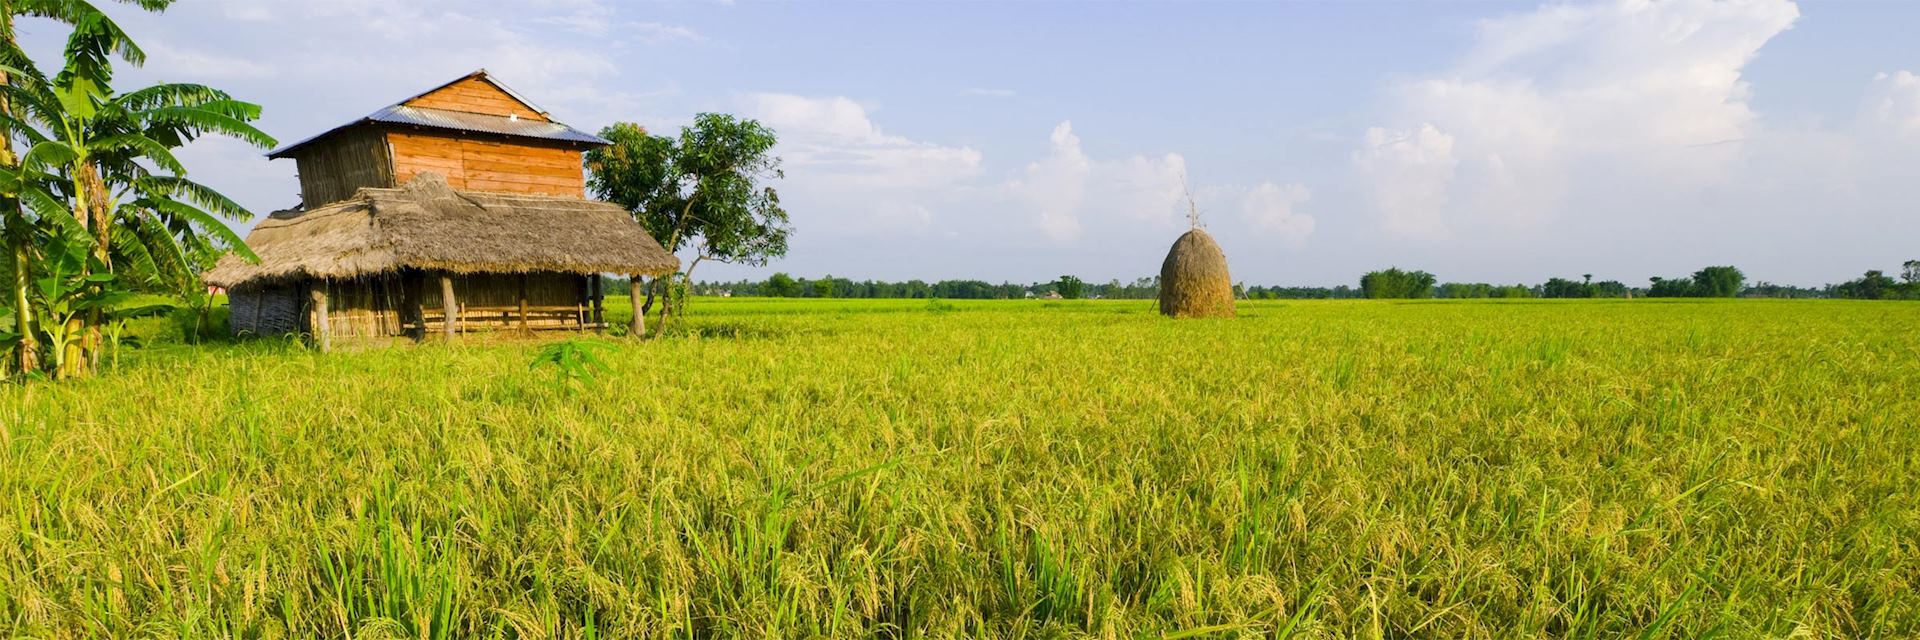 Rice paddy in Terai